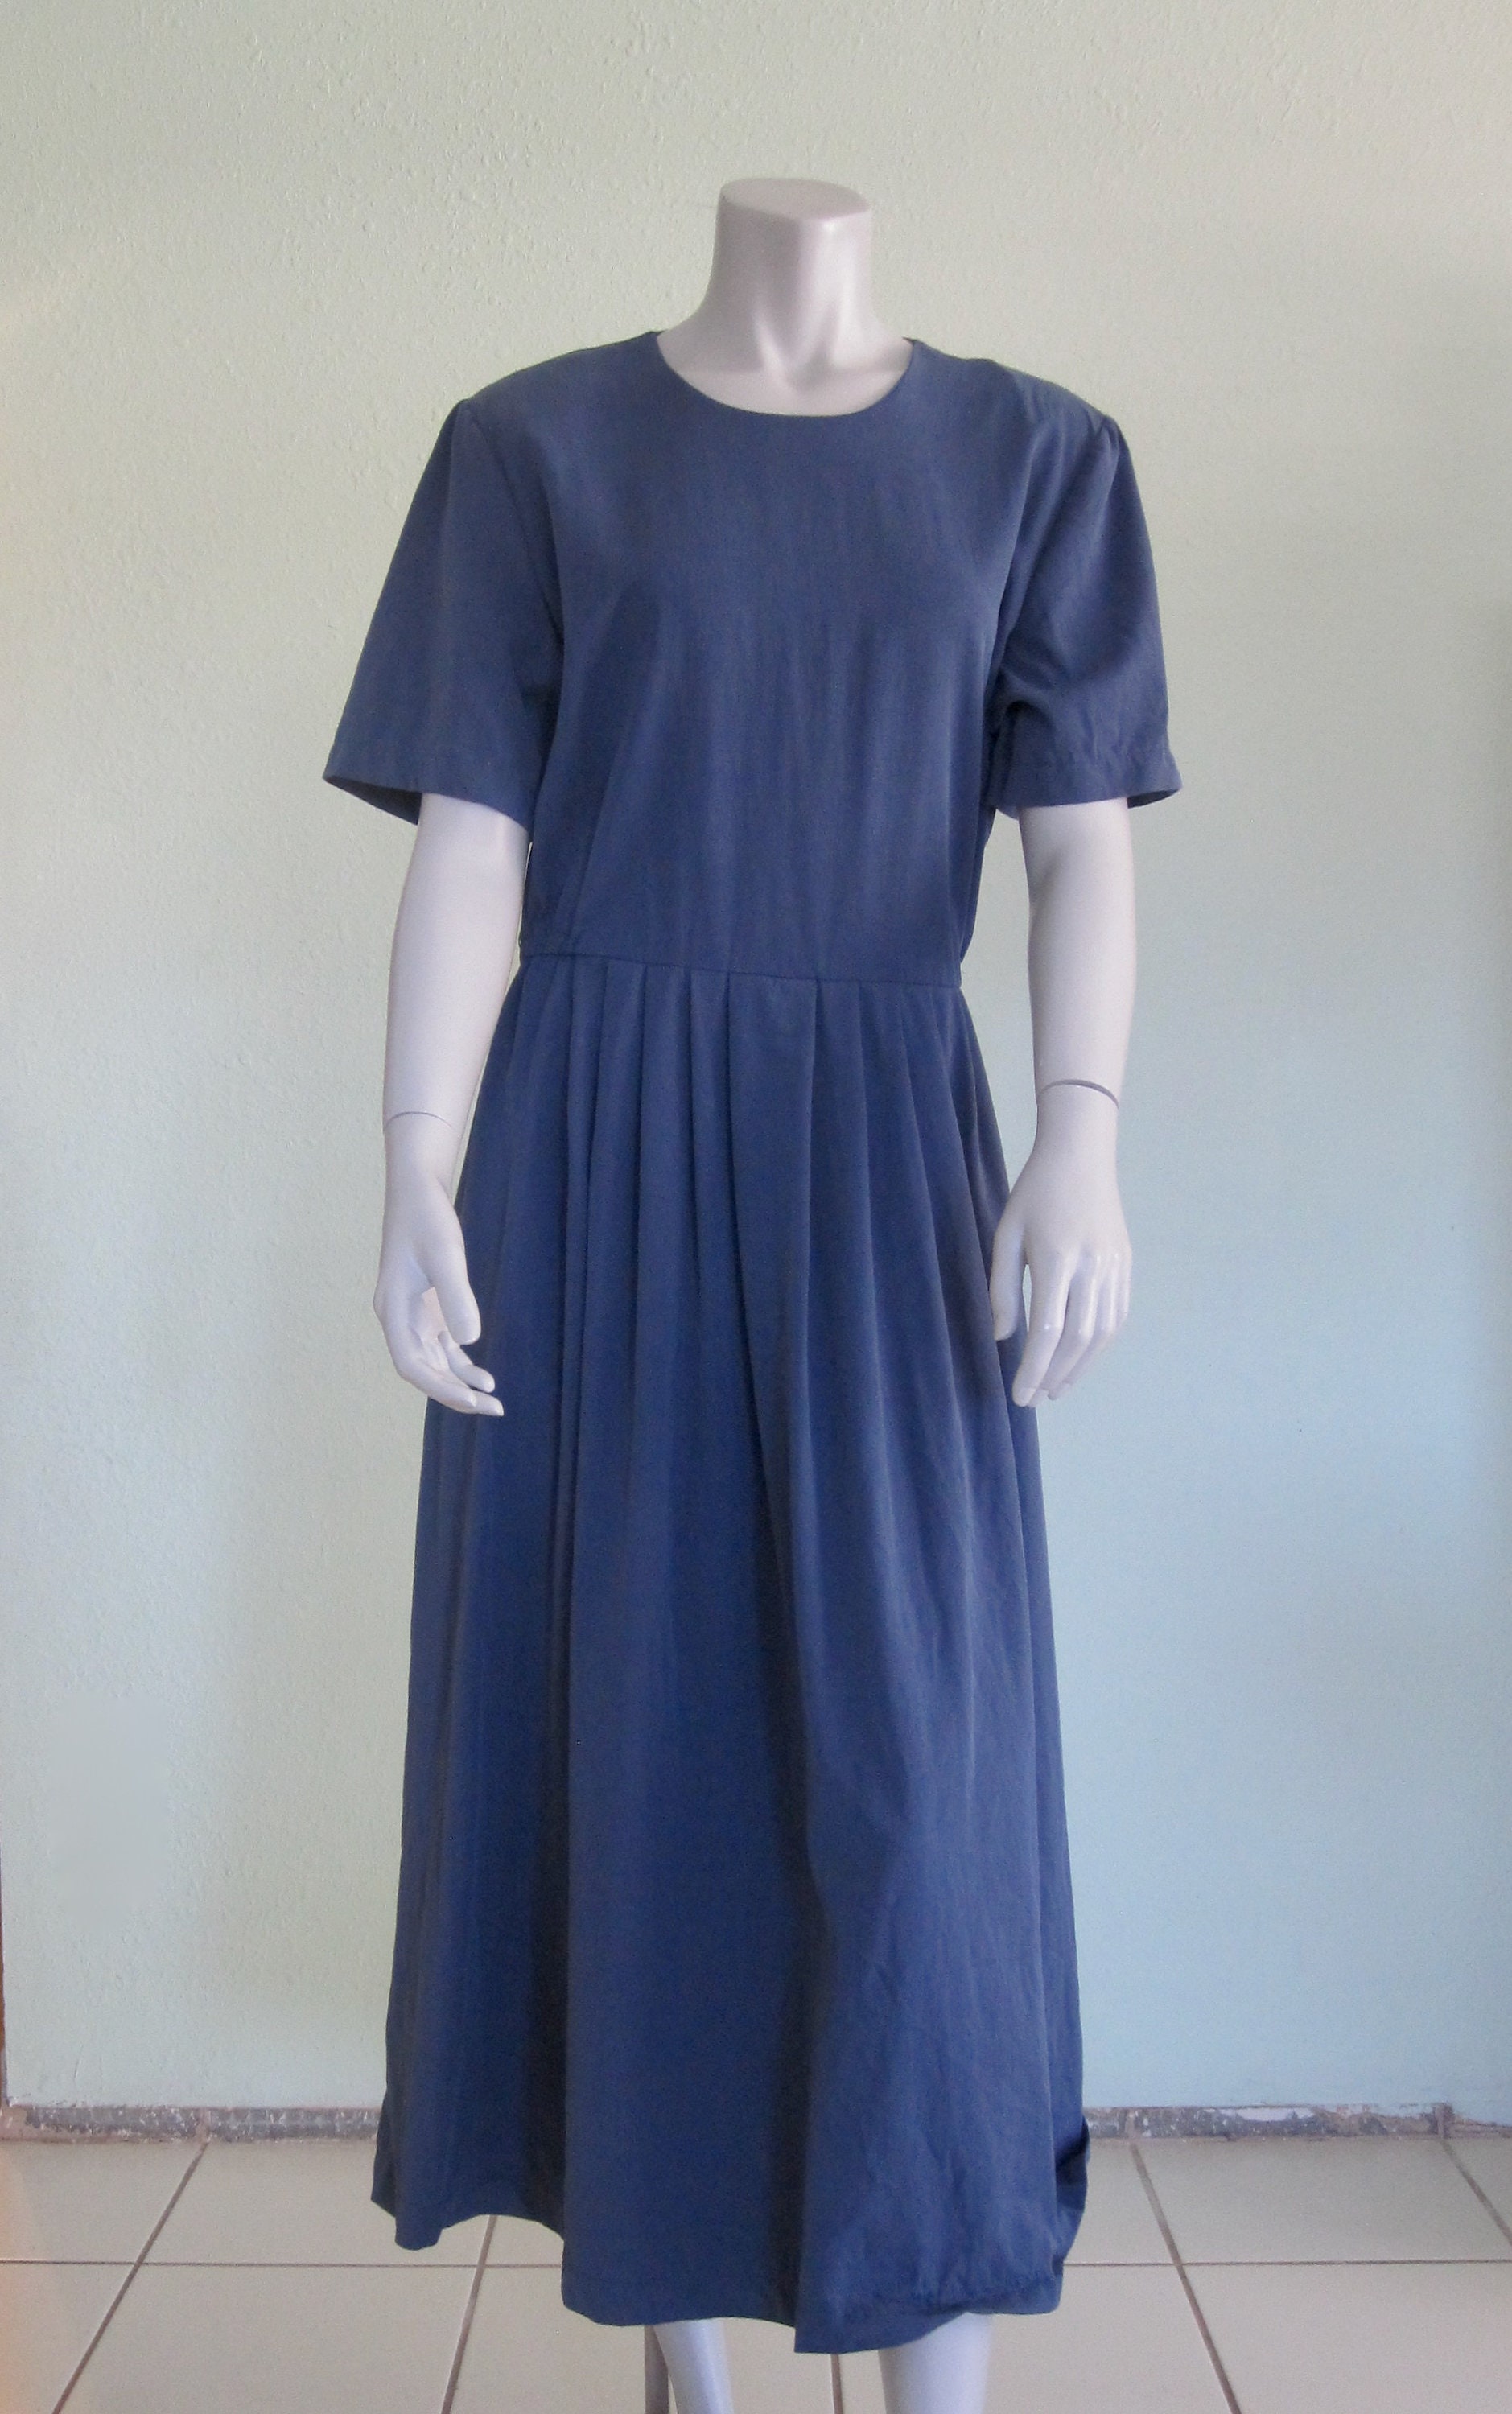 90s Blue Dress Vintage Tencel Dress by Chelsea Jones | Etsy